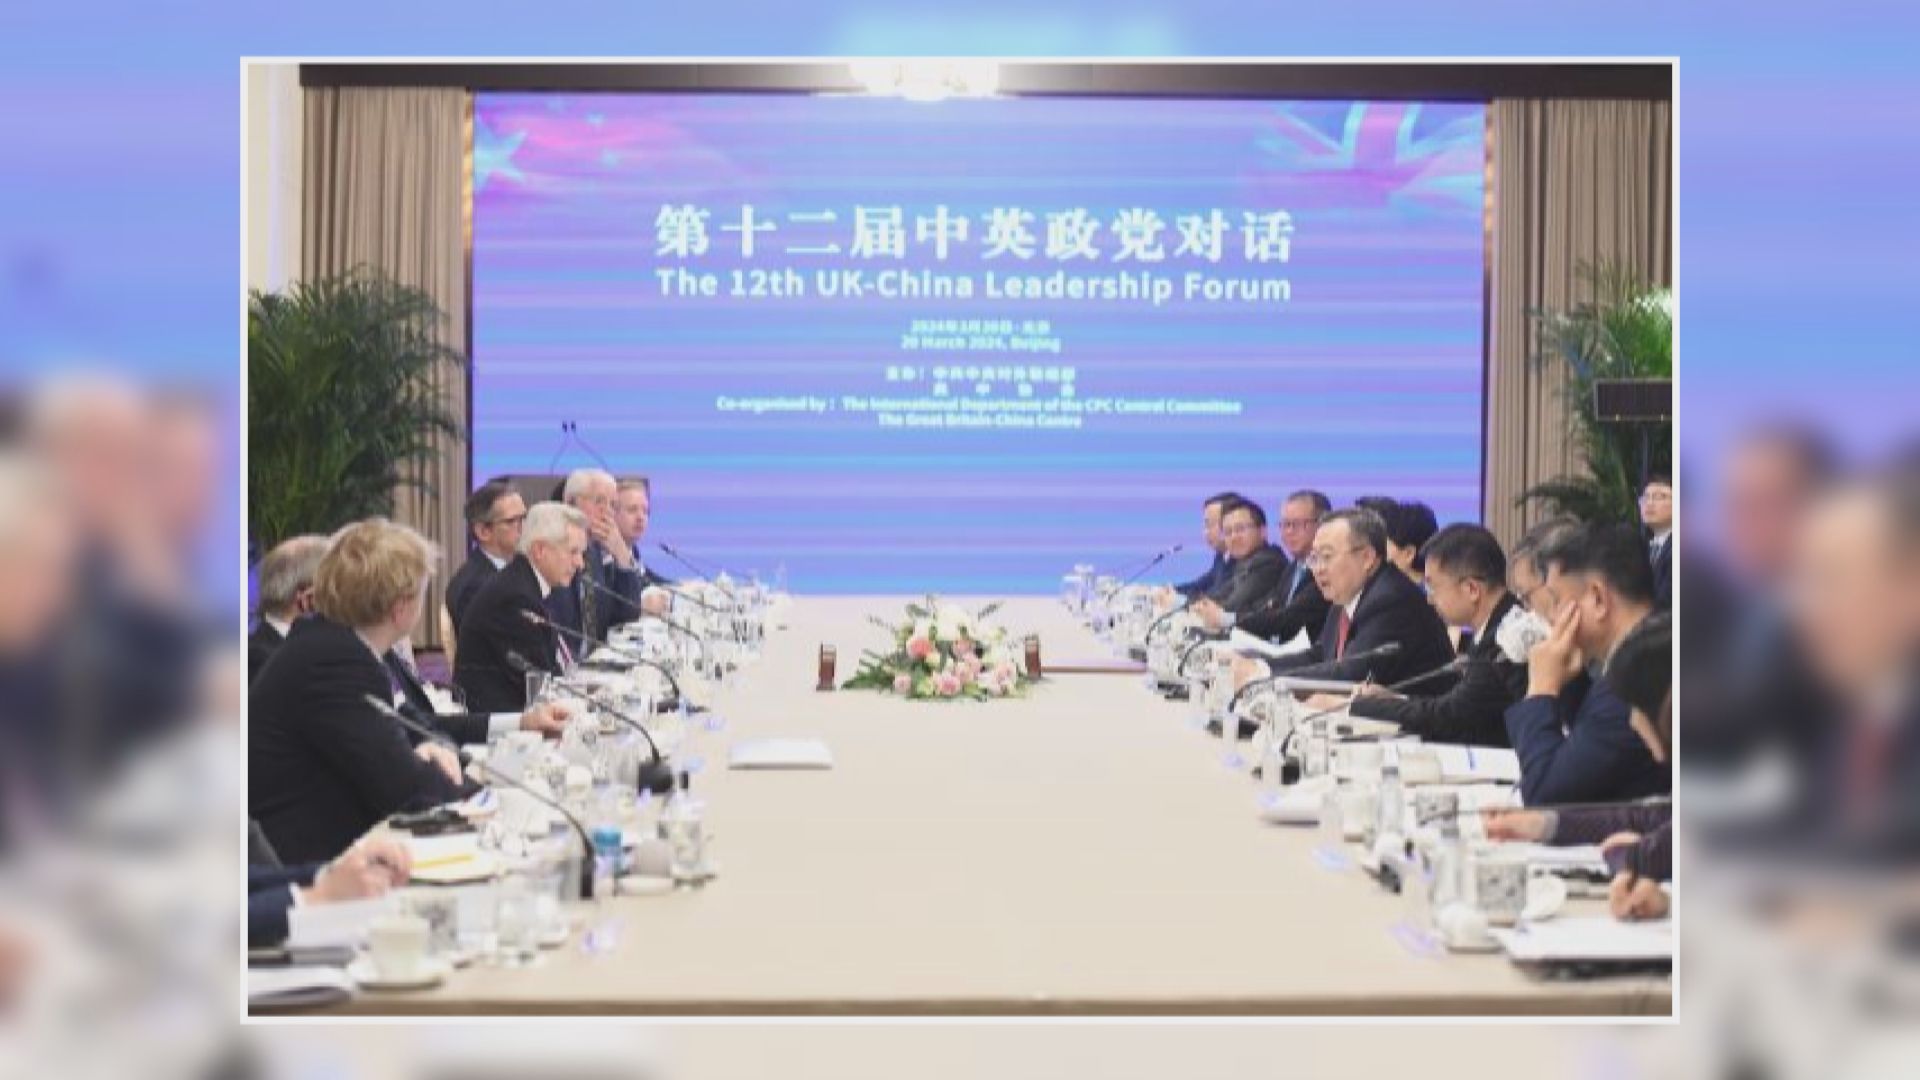 中英政黨對話在北京舉行 討論加強政黨溝通和推動中英關係等議題